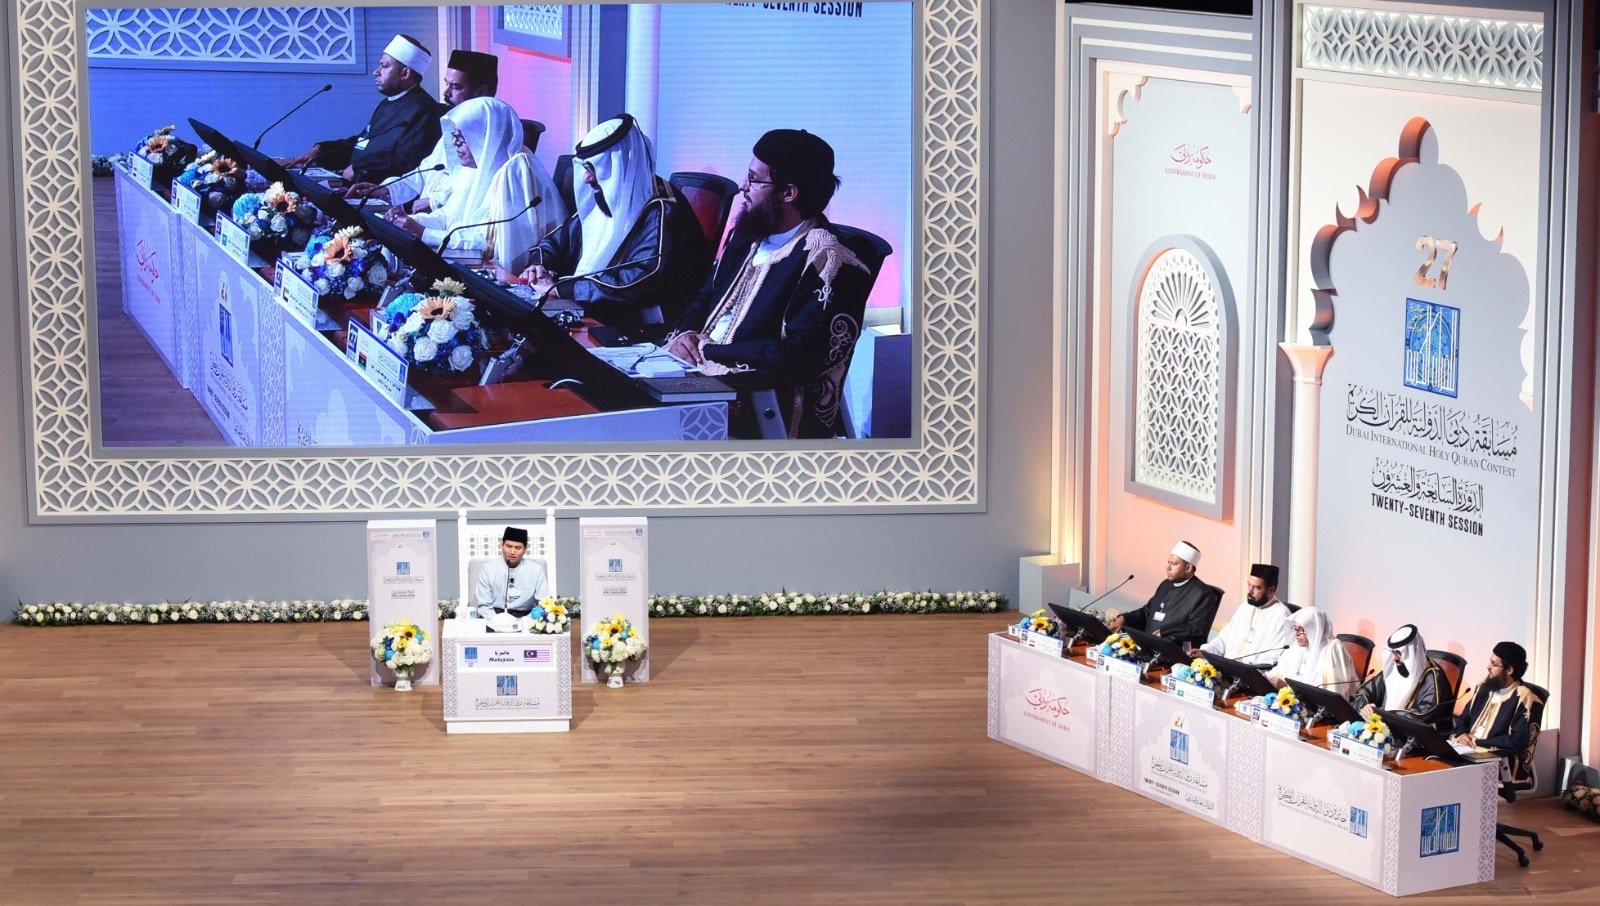 دبي: انطلاق أكبر جائزة للقرآن بالعالم بمشاركة 70 دولة عربية وغربية